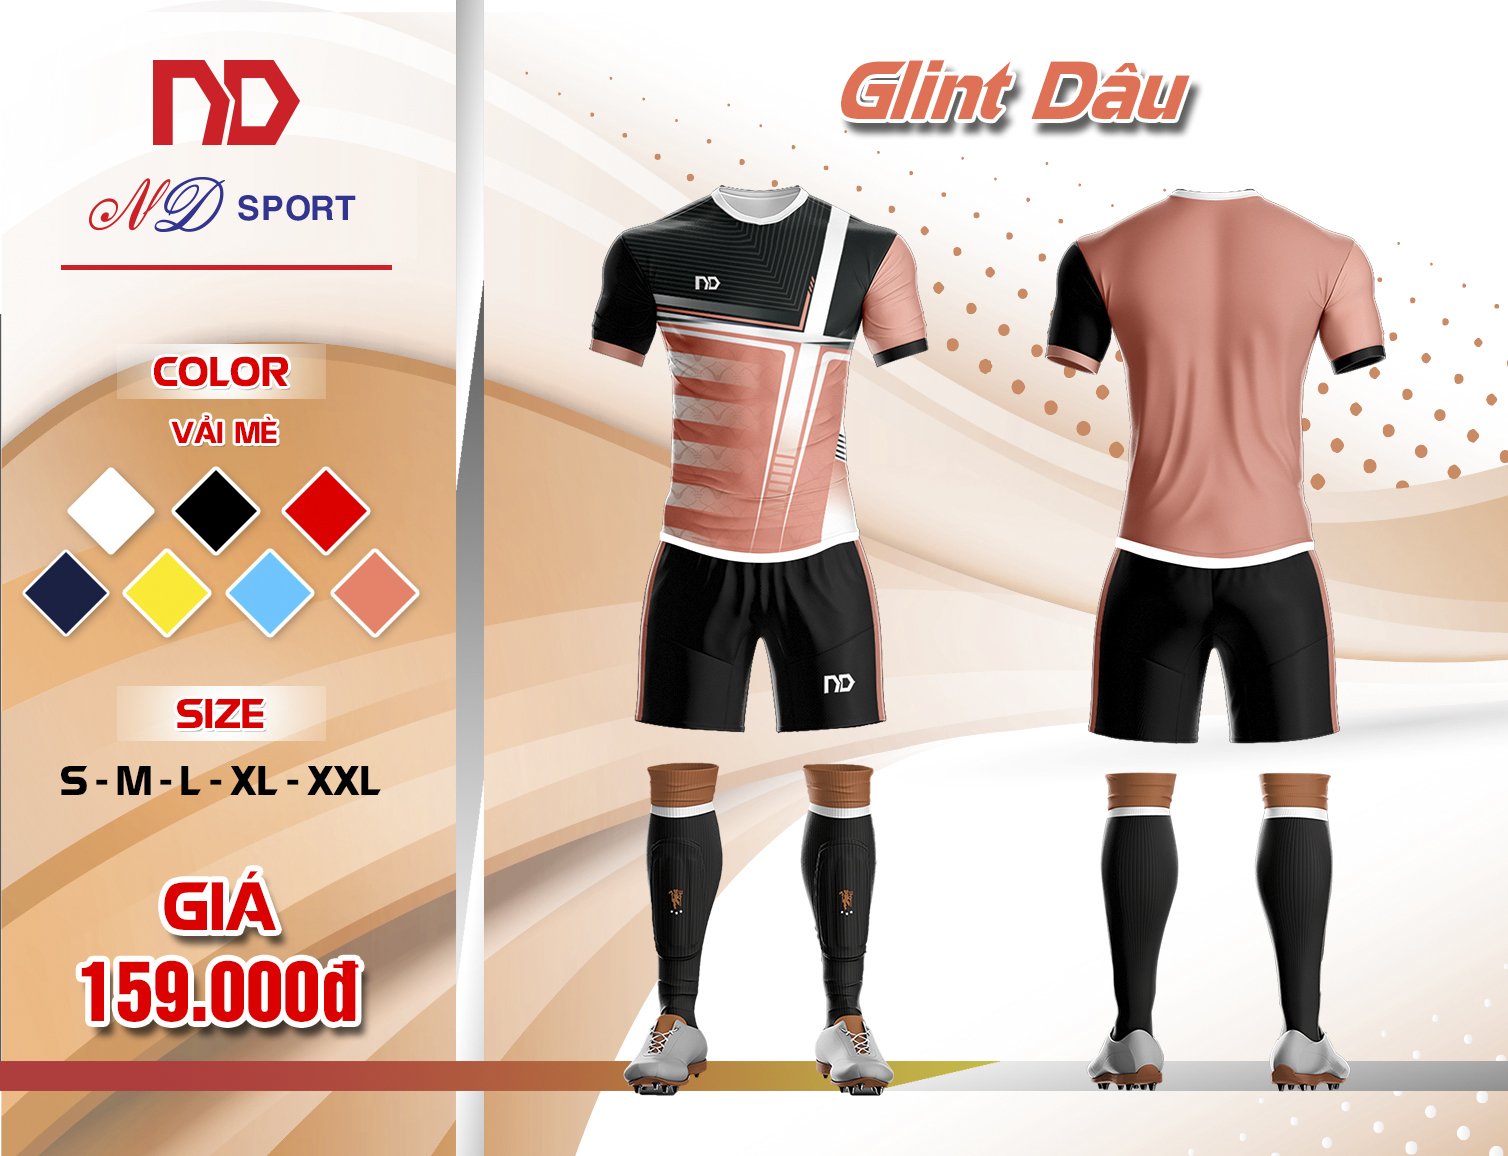 Bộ quần áo thể thao GLINT